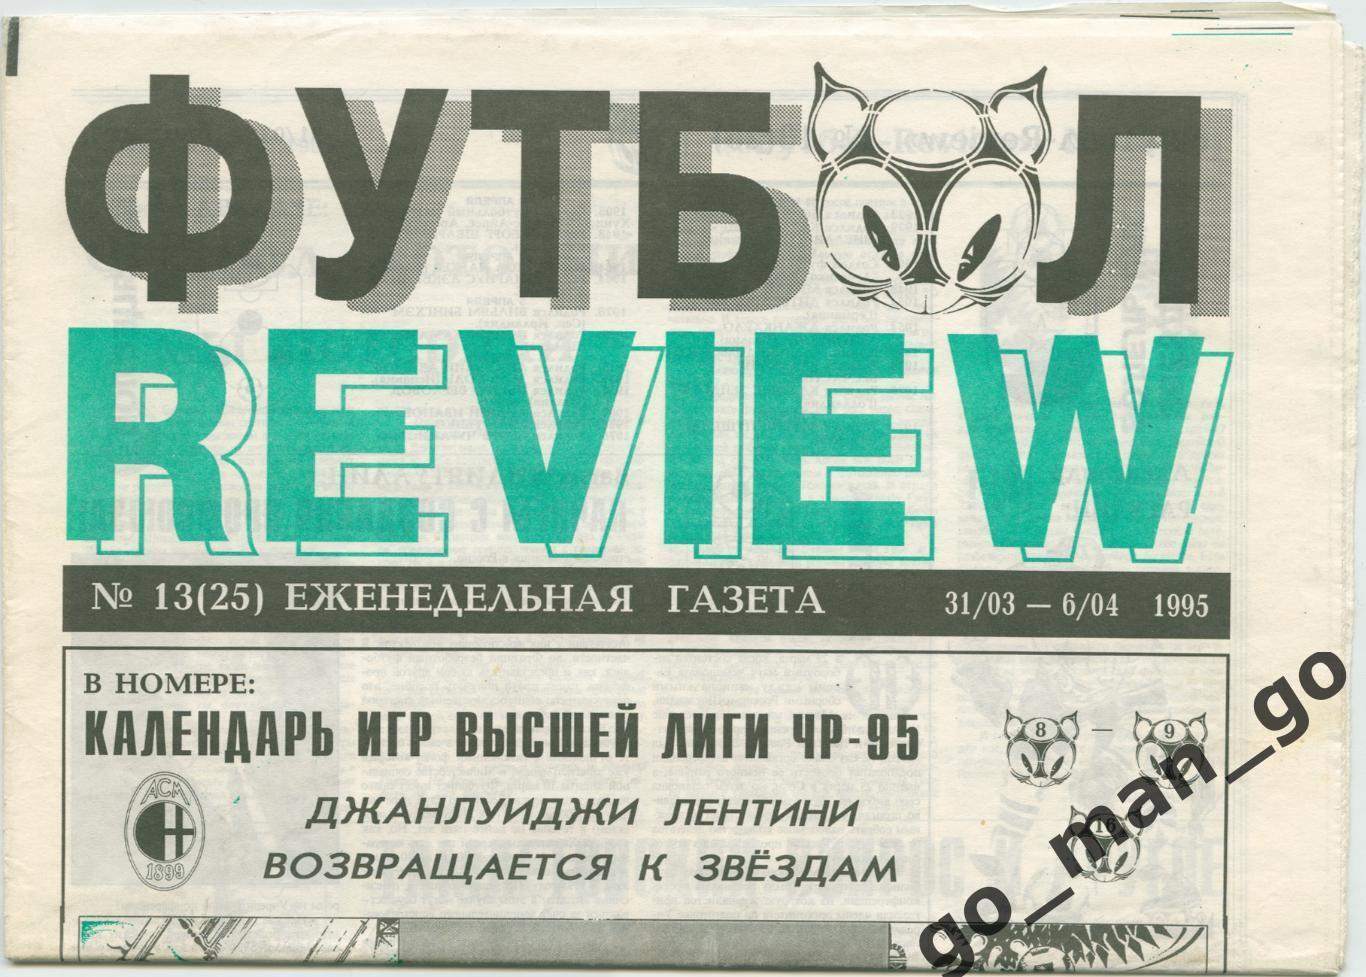 Еженедельник Футбол-Review (Футбол-Ревю), 31.03-06.04.1995, № 13.